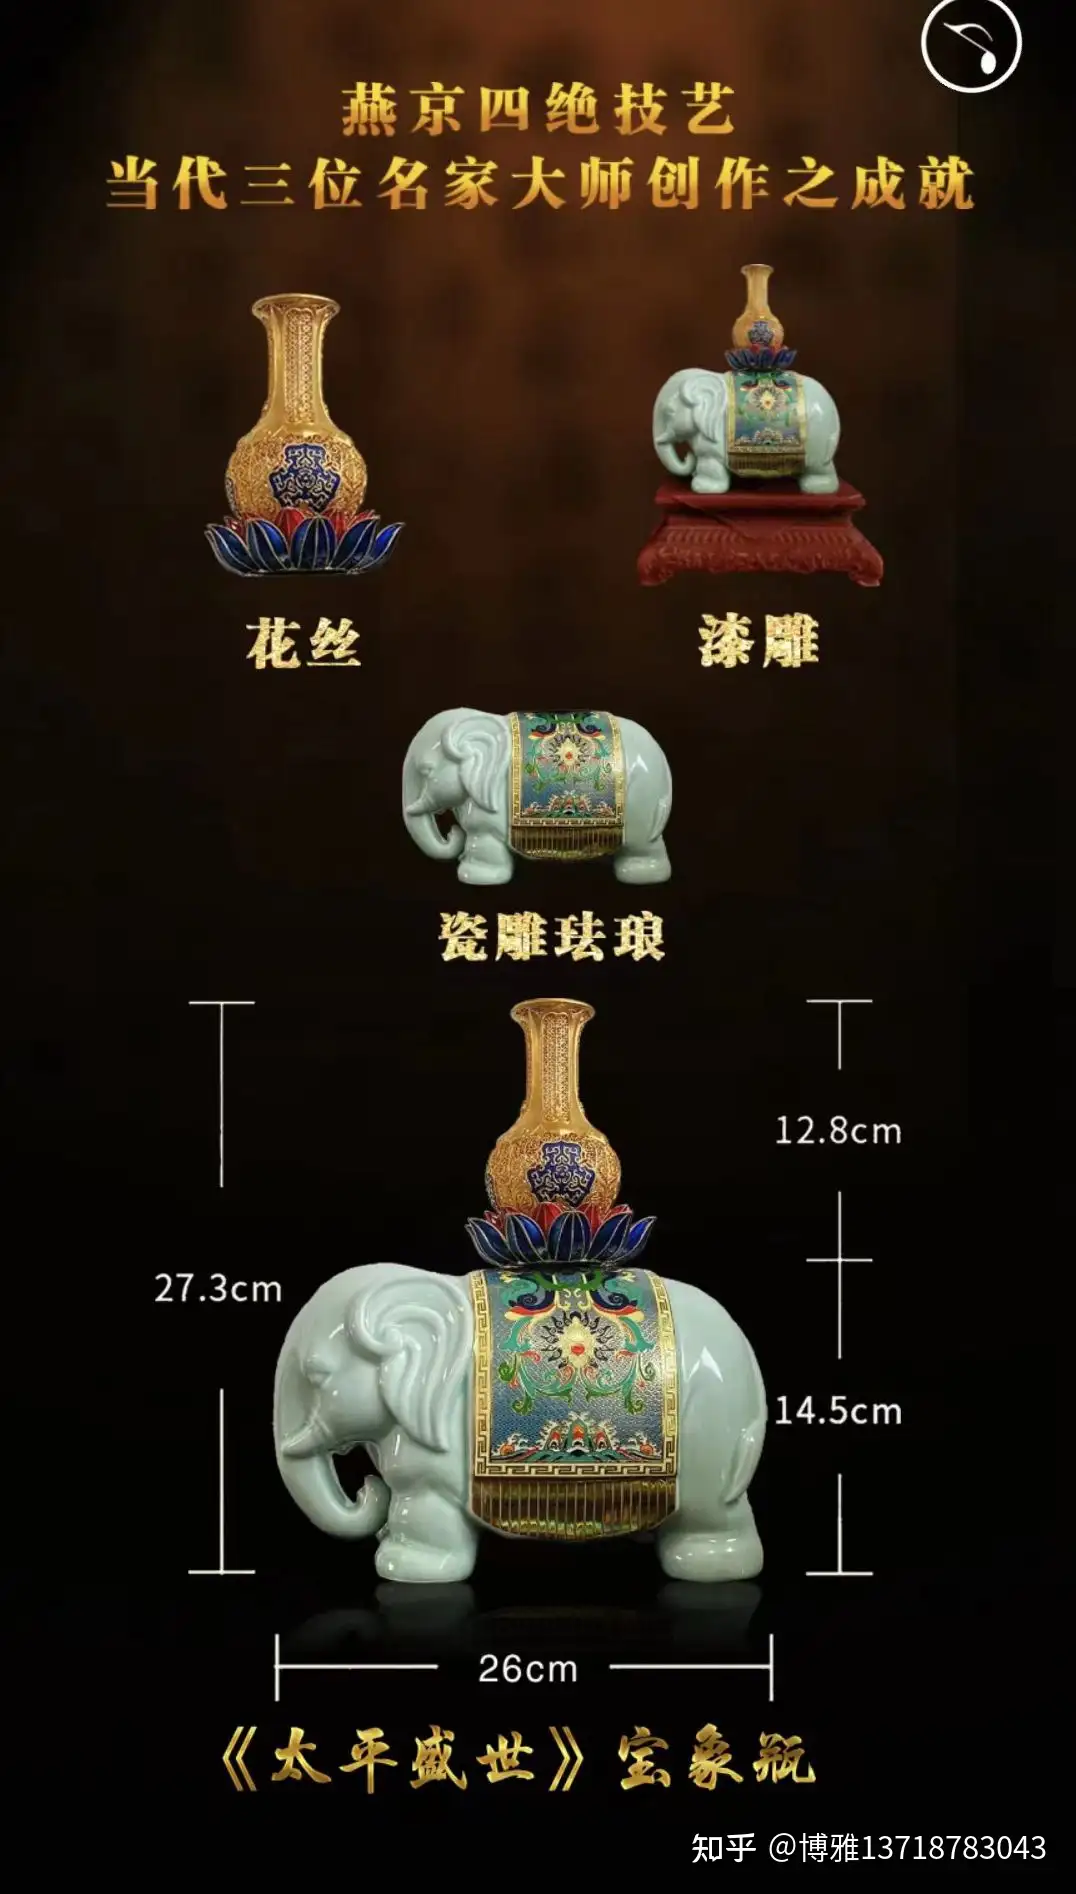 太平盛世》宝象瓶三位大师采用瓷雕珐琅花丝镶嵌漆雕三种工艺创作而成- 知乎